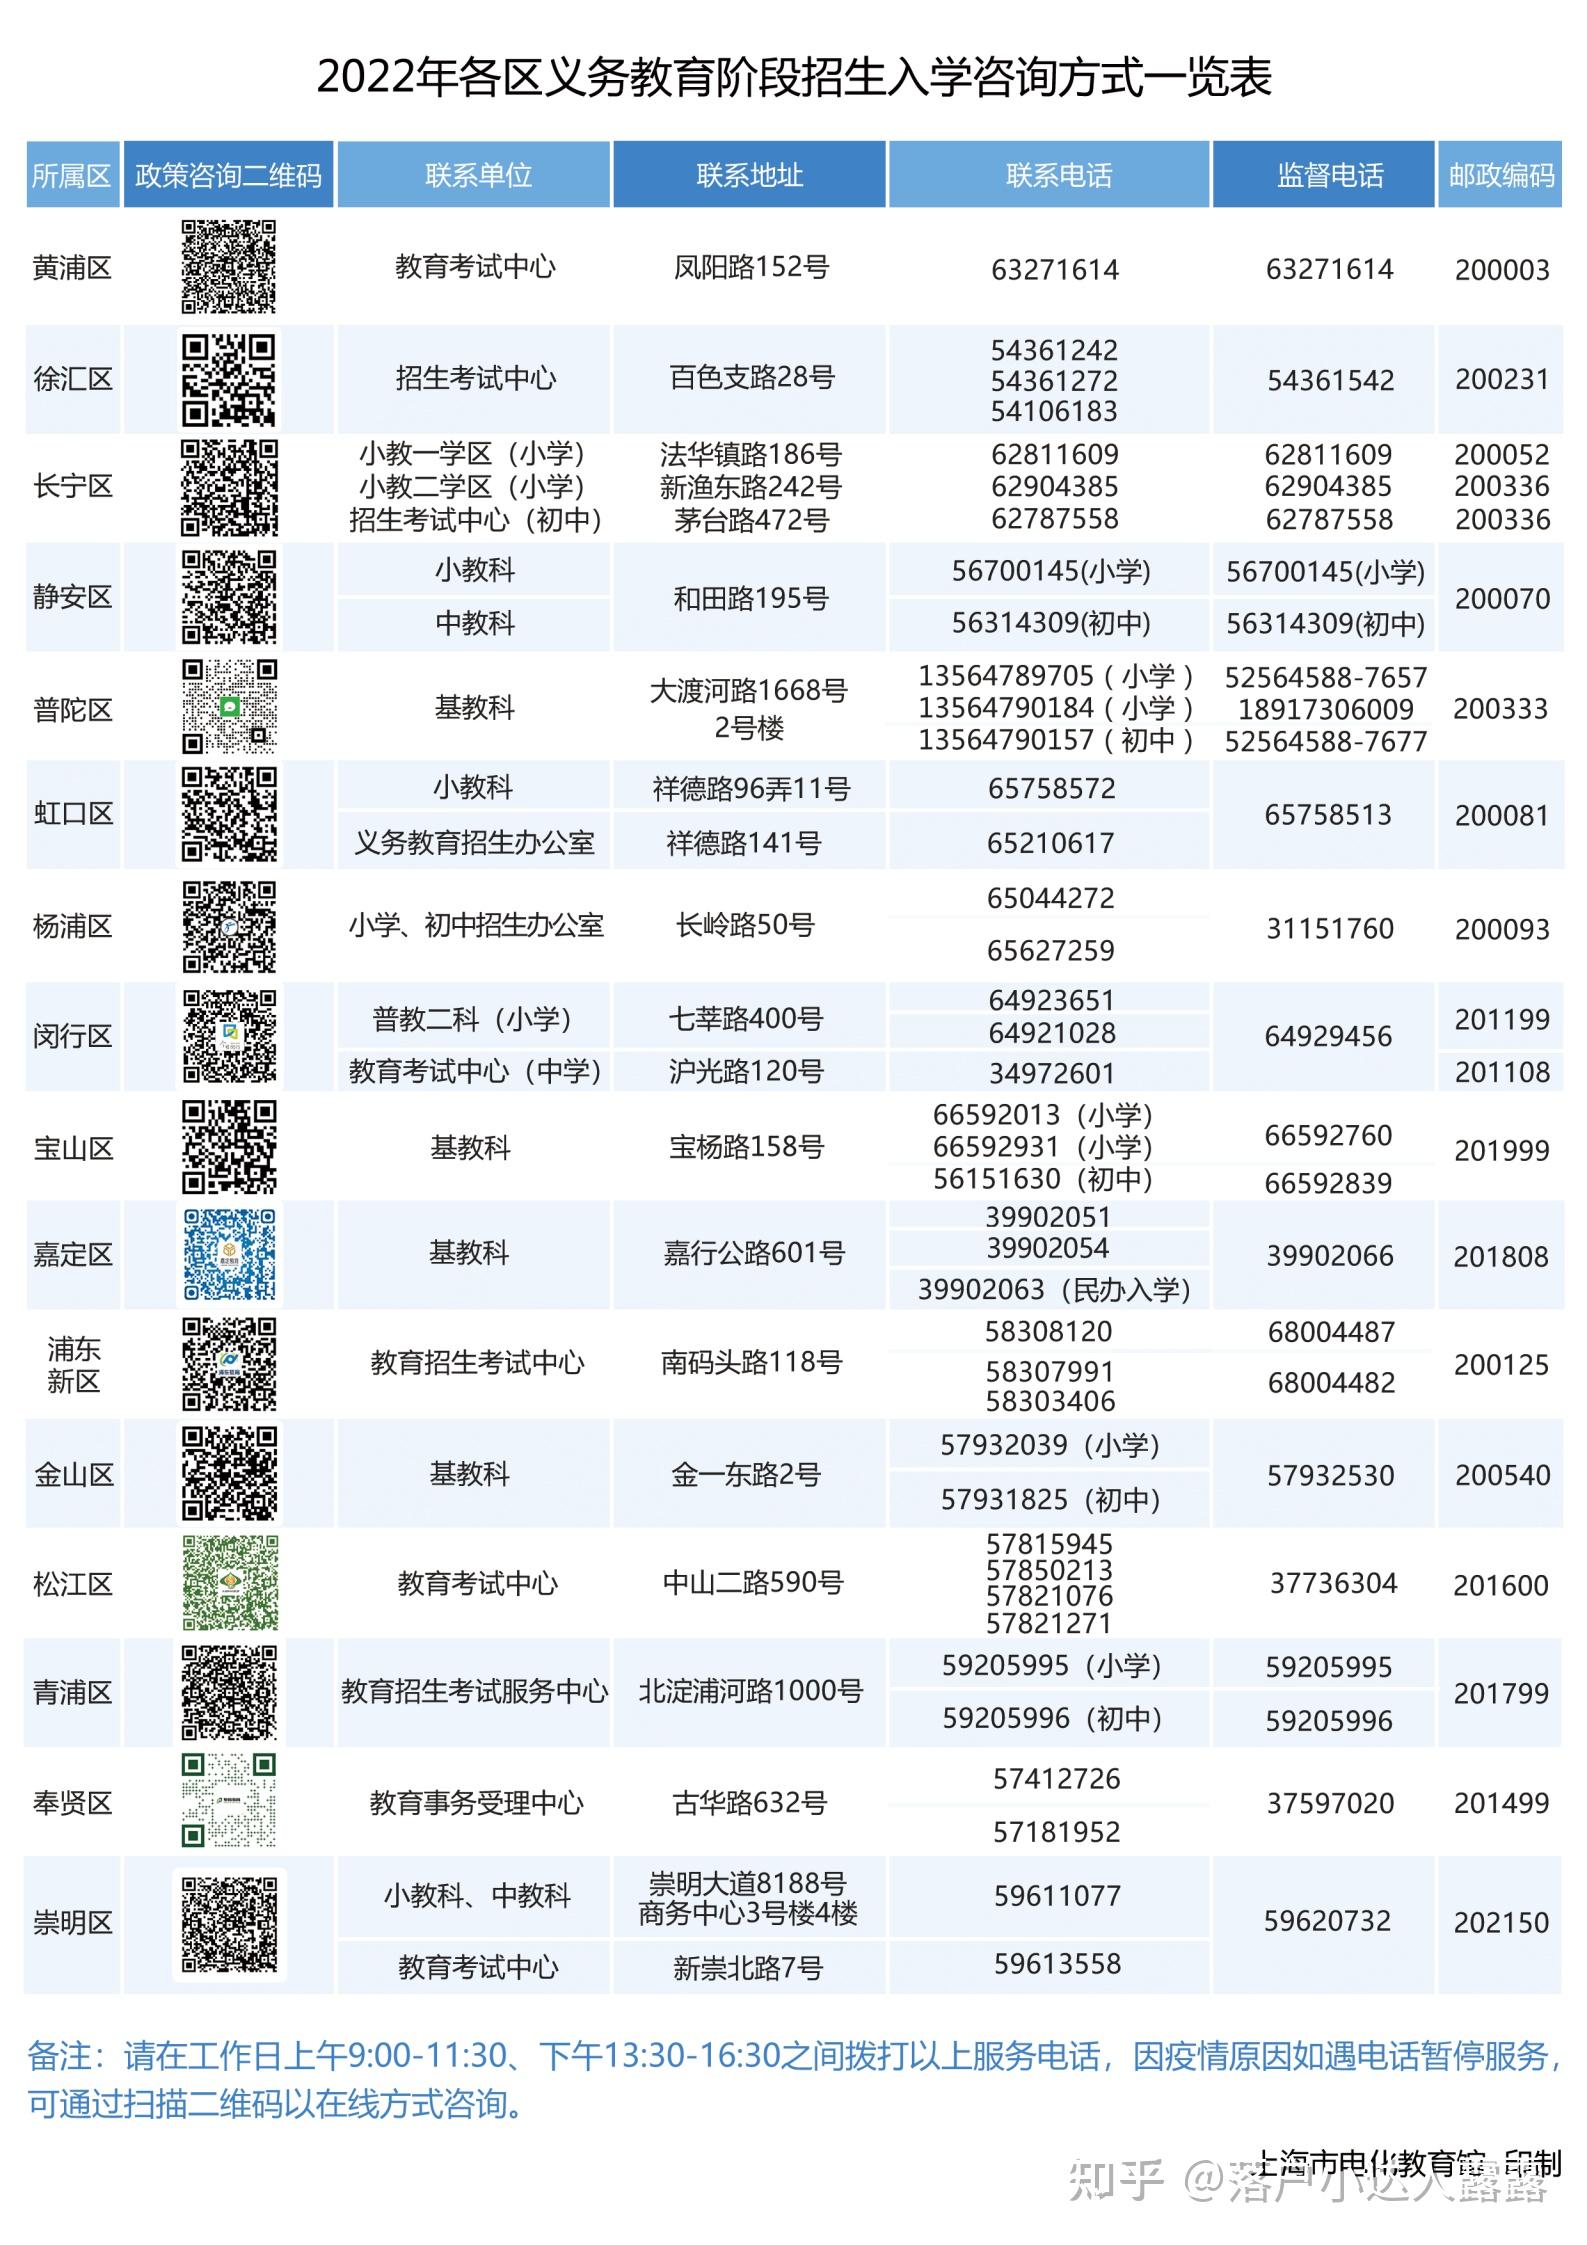 重磅!2022年上海16区中小学招生入学咨询方式已公布